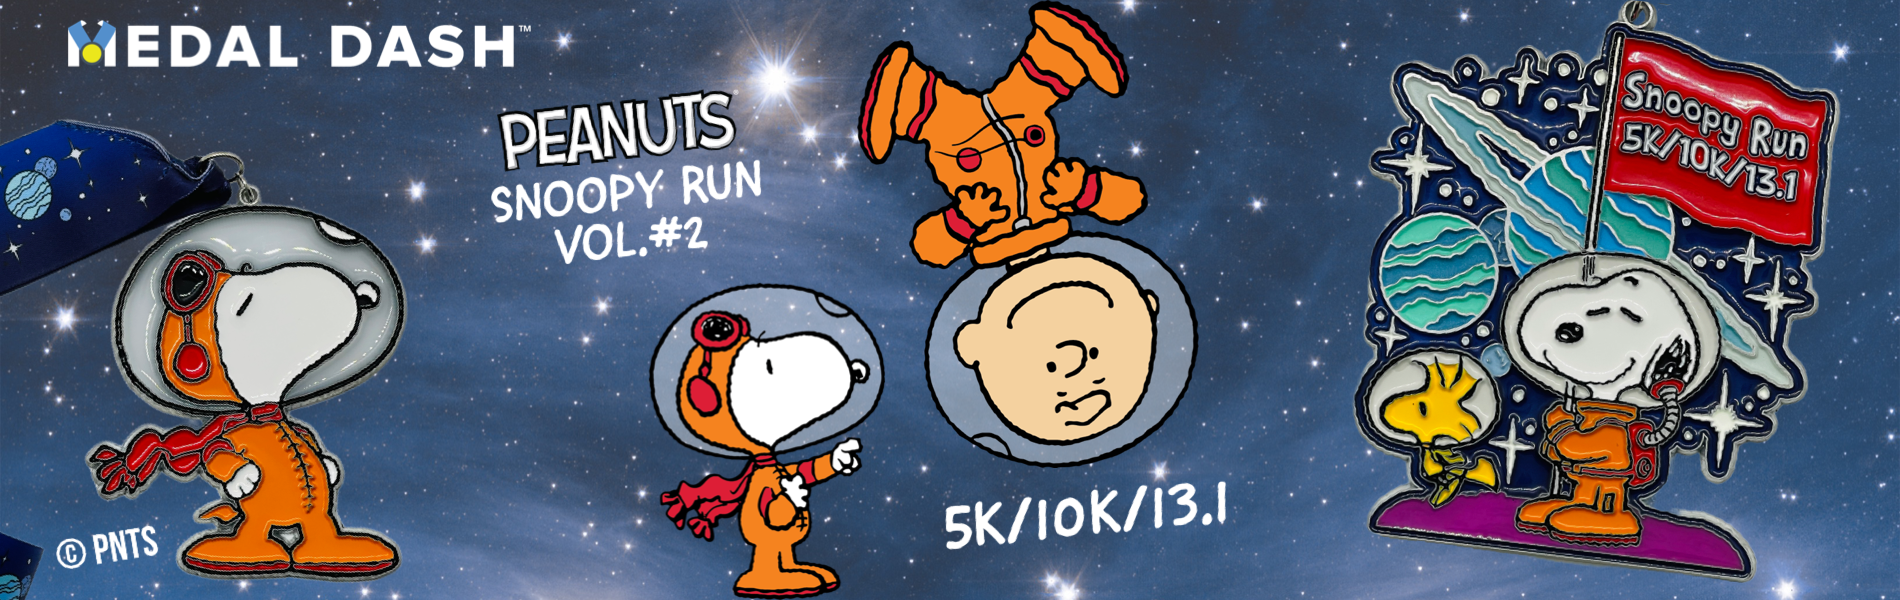 Snoopy Run 5K/10K/13.1